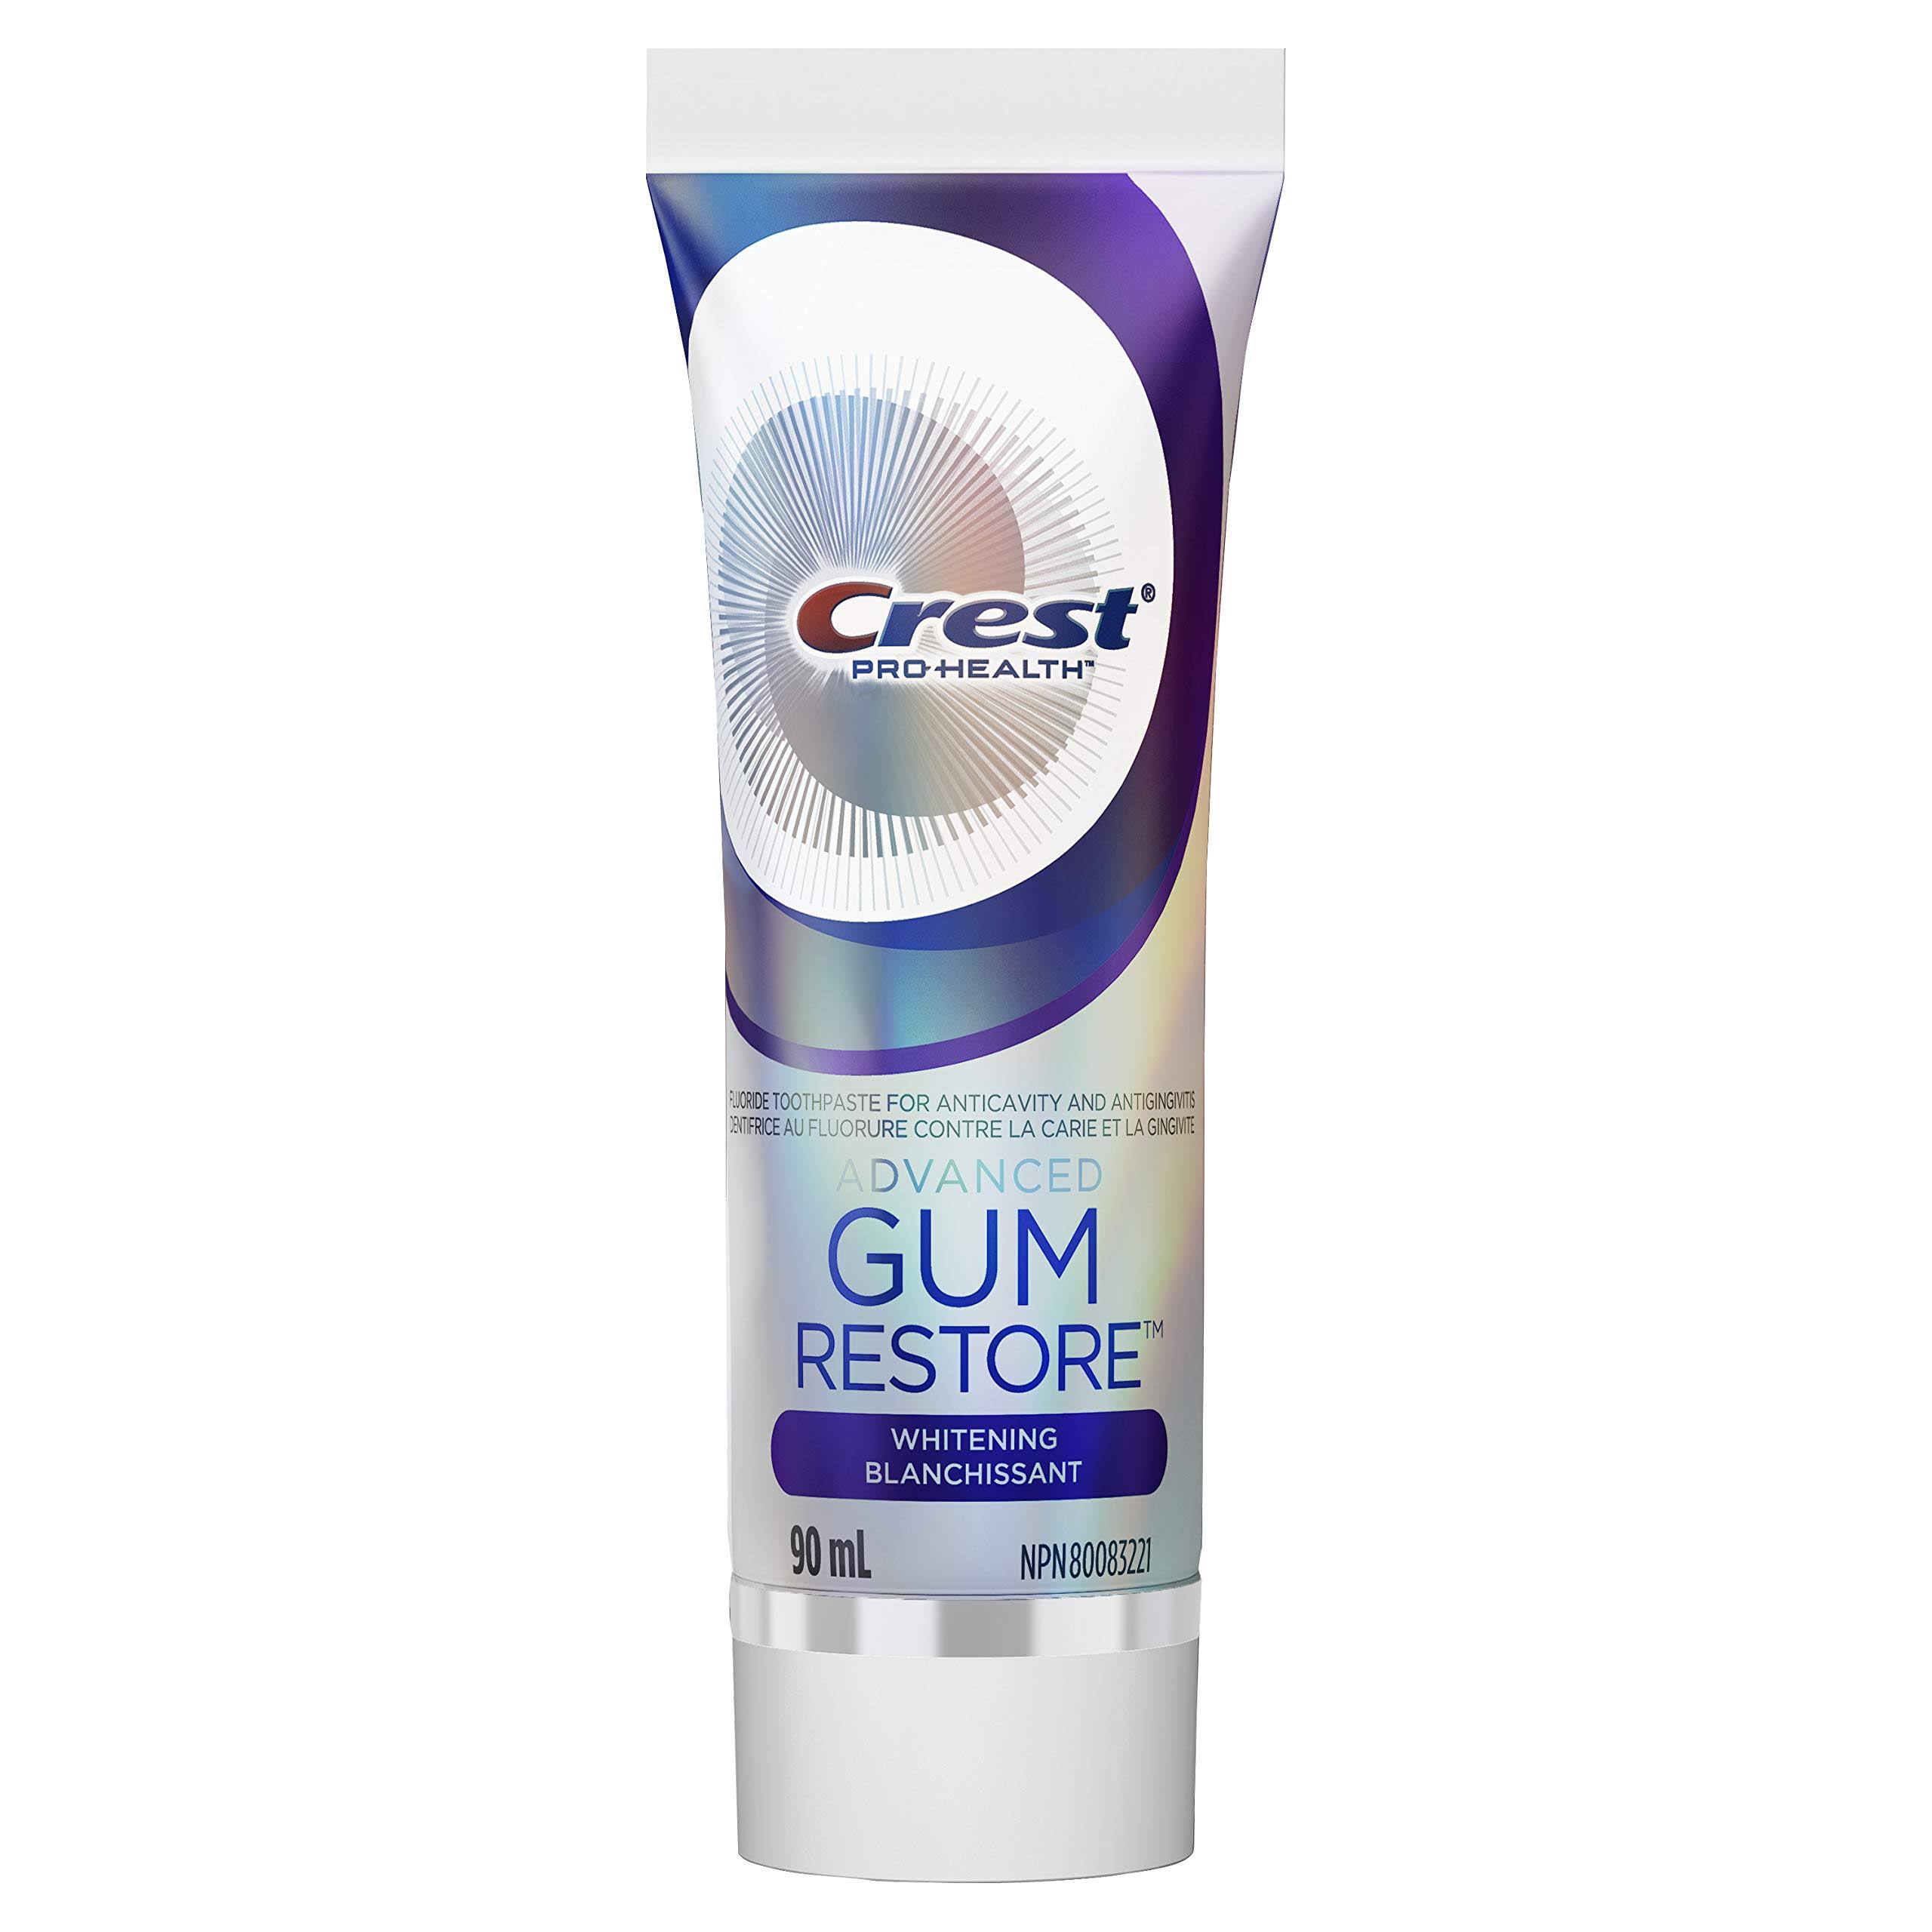 Crest Pro Health Advanced Gum Restore Toothpaste Whitening 90mL